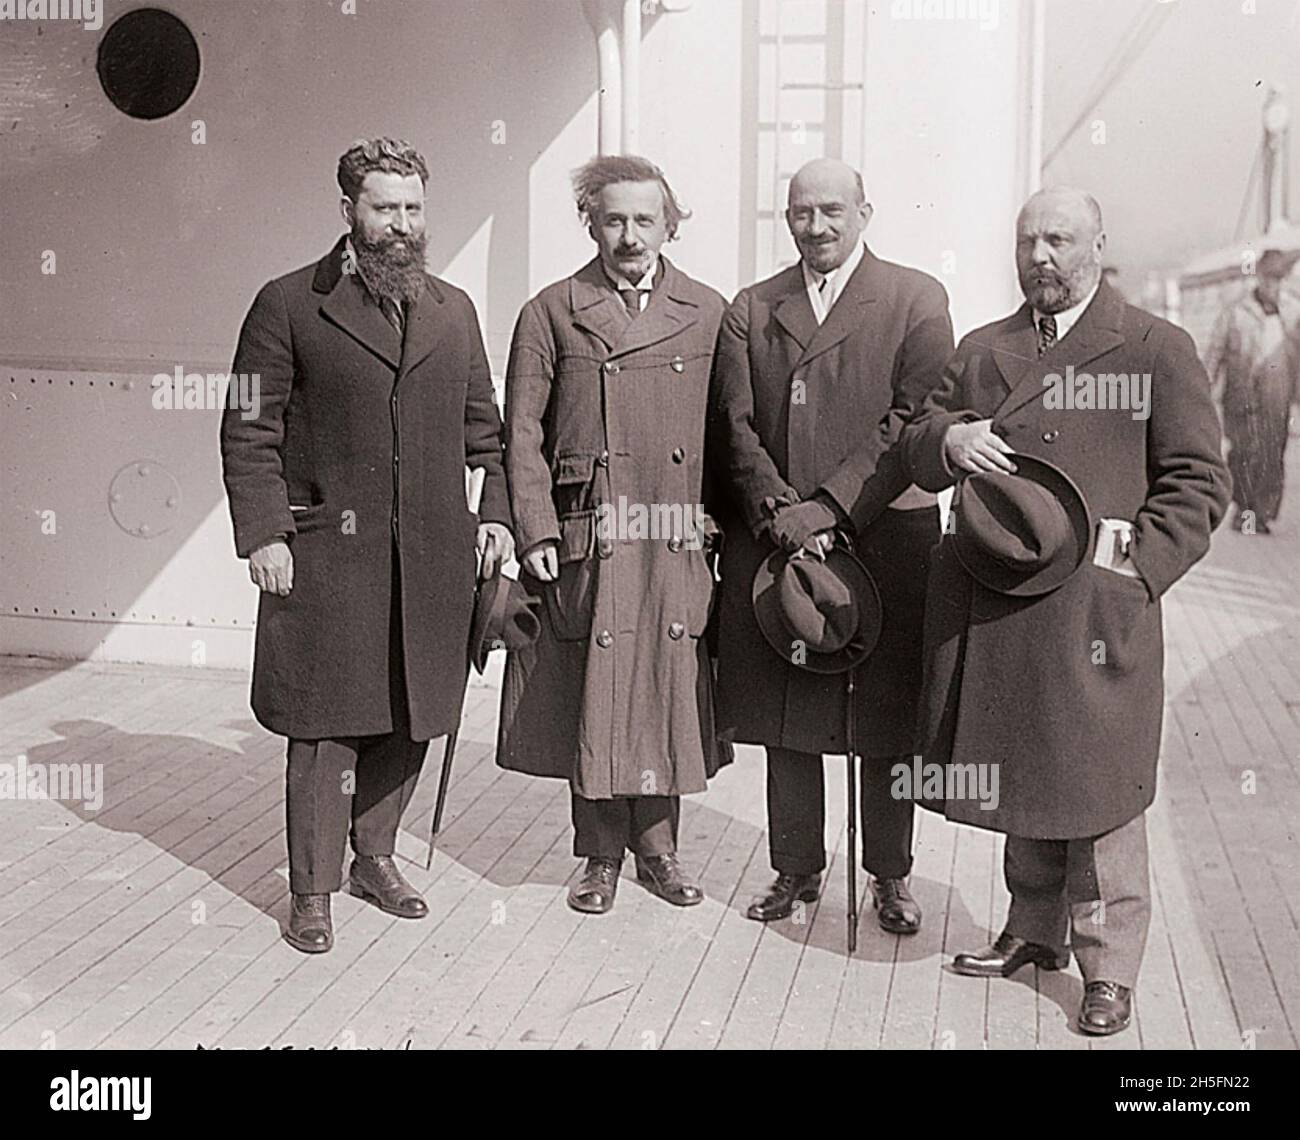 ALBERT EINSTEIN  with Zionist leaders about 1918. From left: Ben-Zion Mossinson, Albert Einstein, Chaim Weizmann, Menachem Ussishkin. Photo: Baines News Service Stock Photo